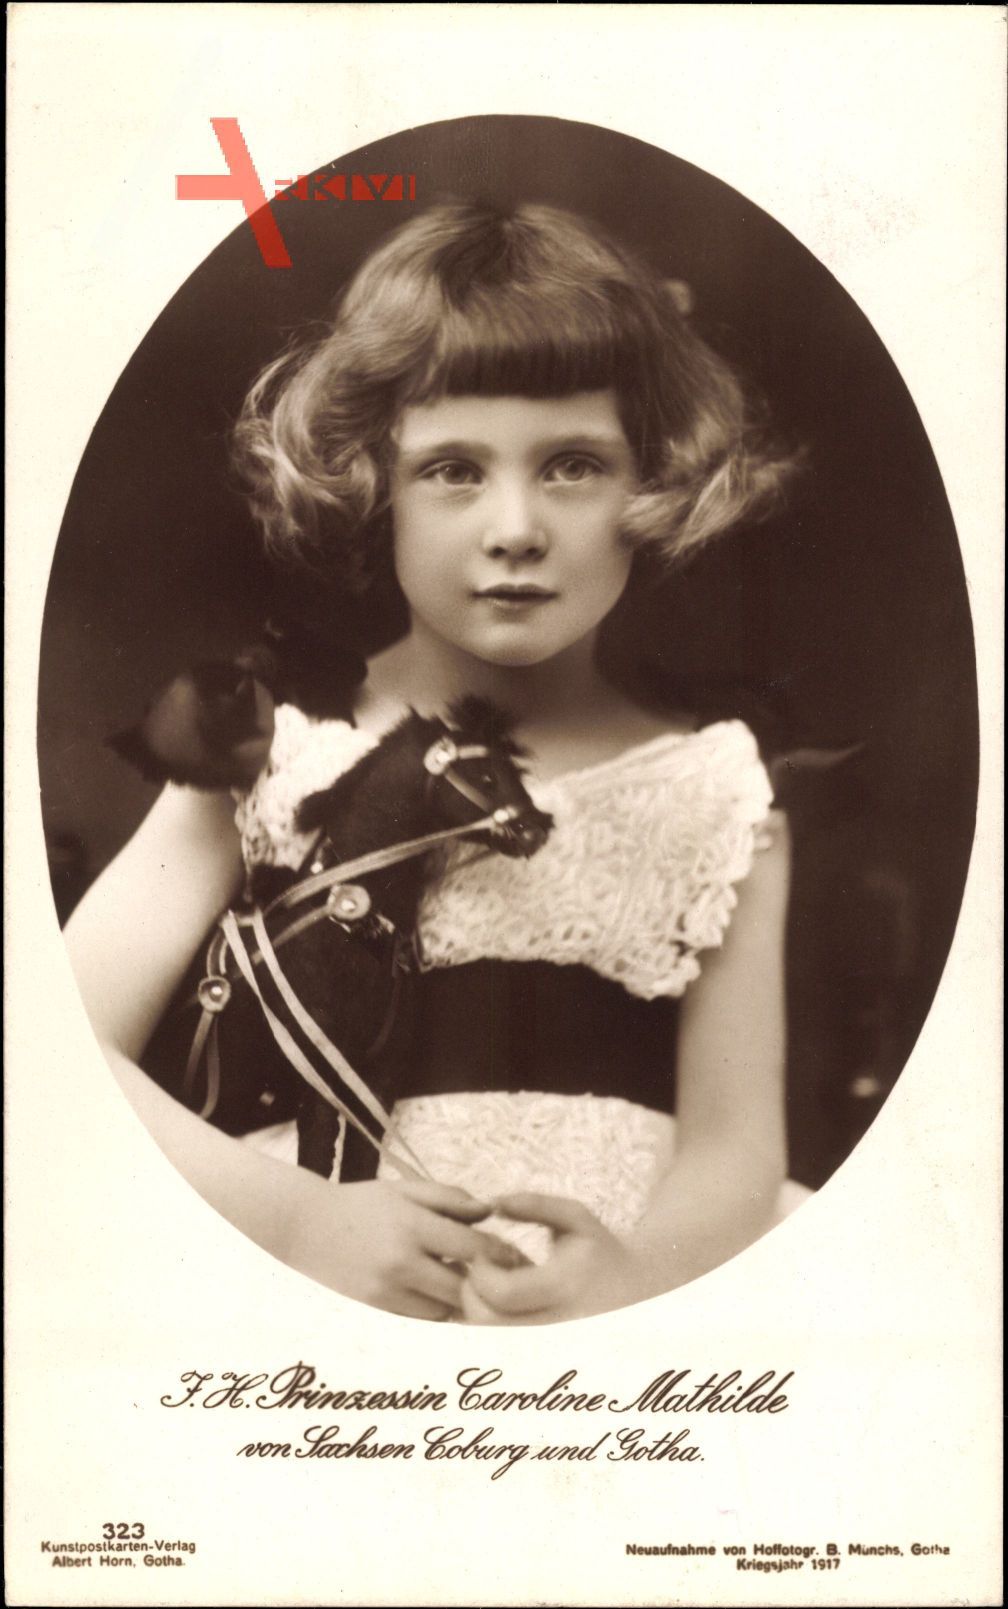 Prinzessin Caroline Mathilde von Sachsen Coburg Gotha, Spielzeug